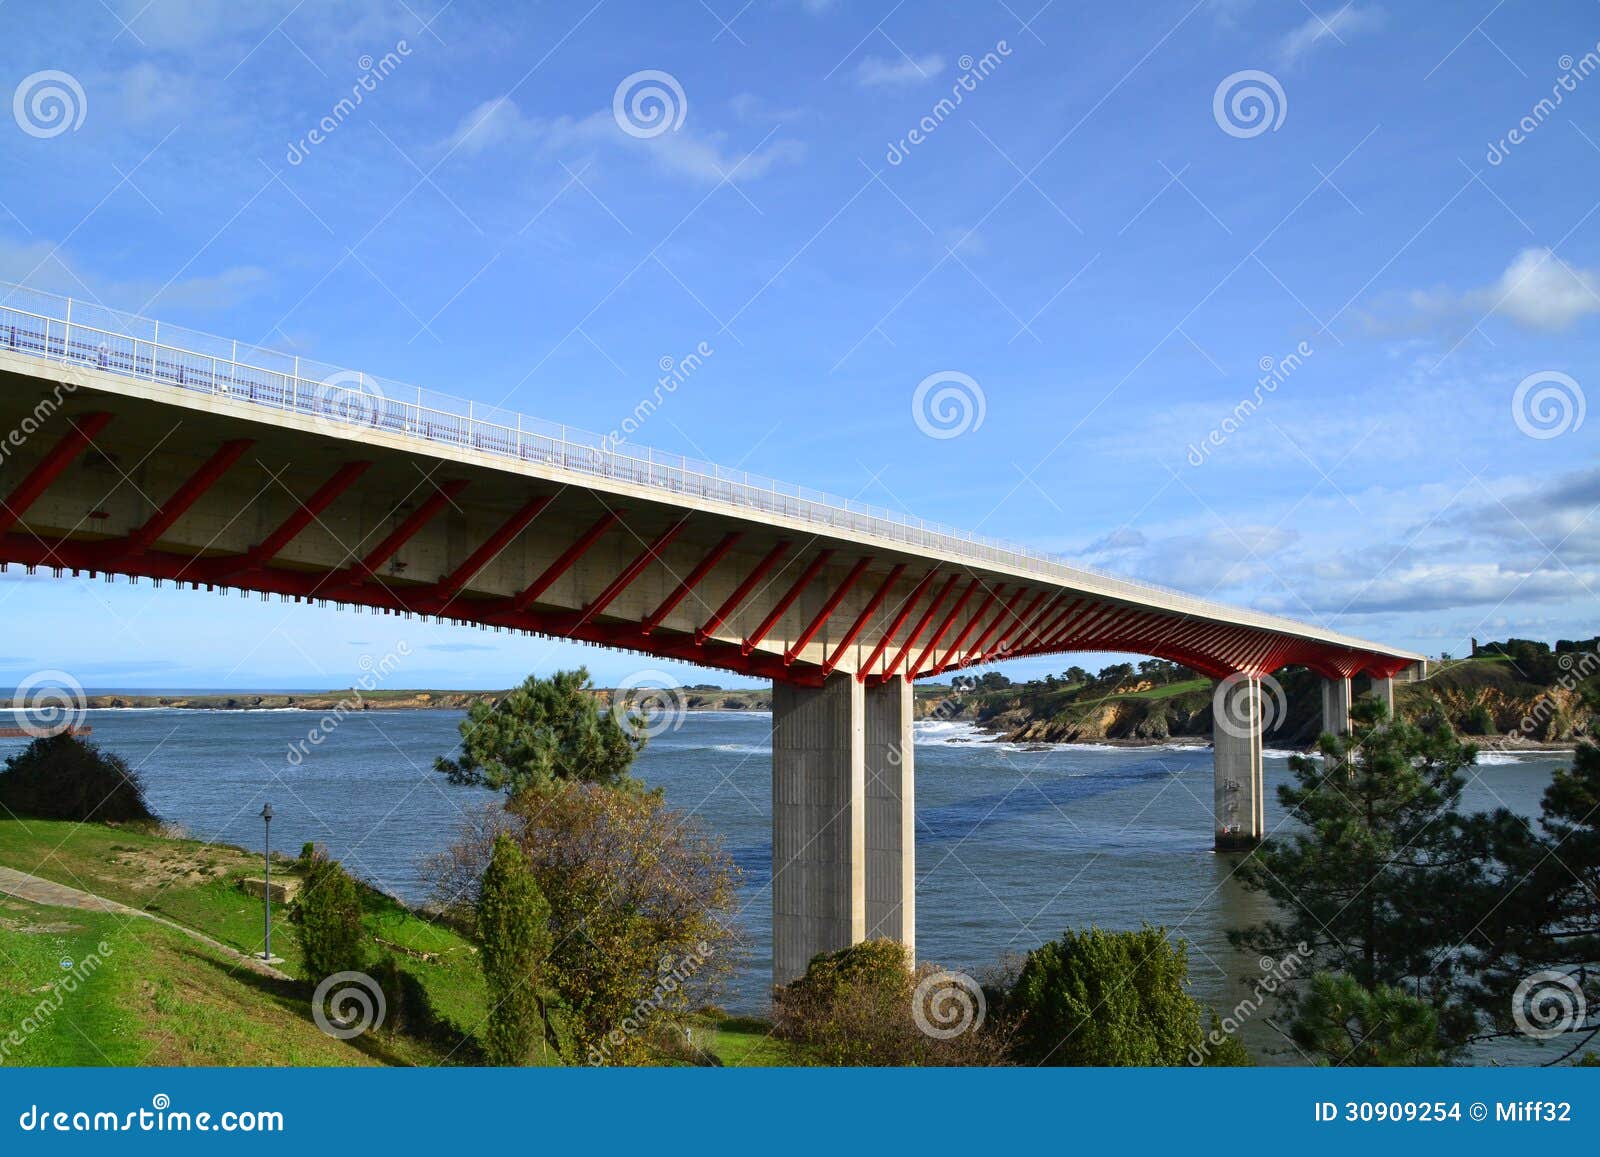 ribadeo bridge